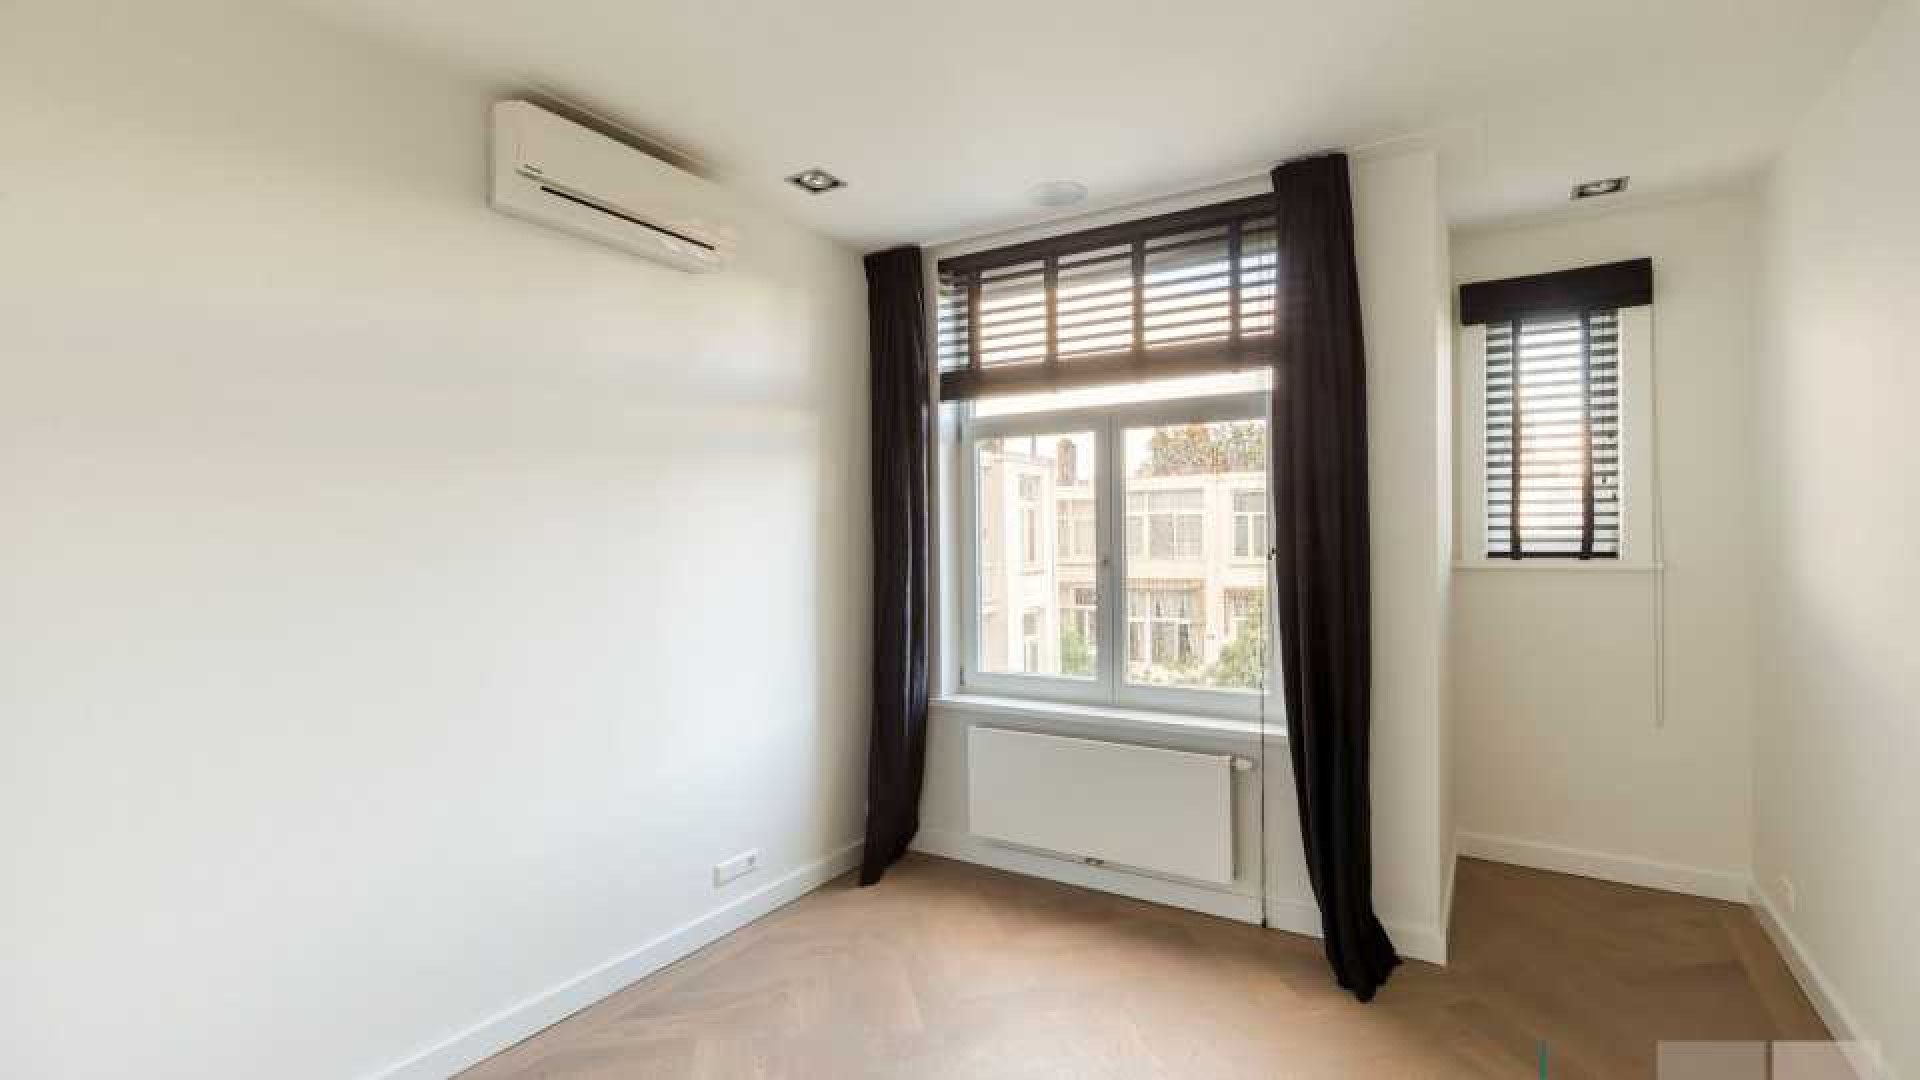 Leco van Zadelhoff verkoopt appartement in Amsterdam Zuid boven de vraagprijs. Zie foto's 15